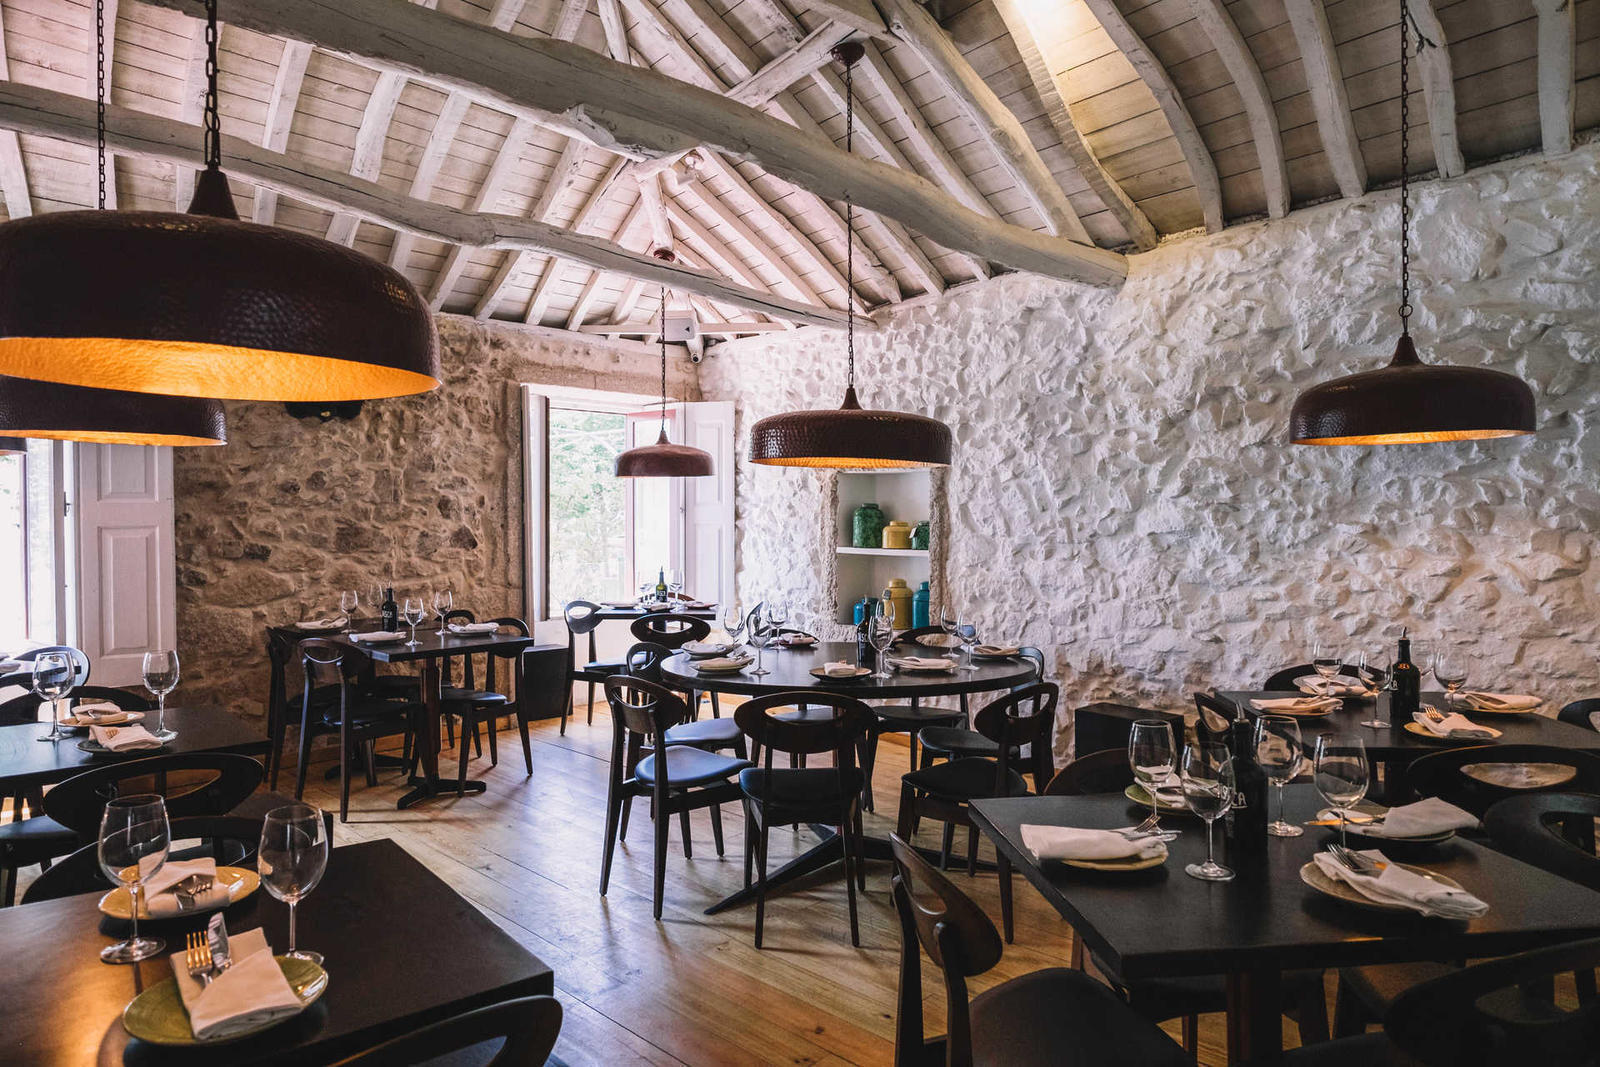 Restaurante Pisca abriu na zona da Foz do Porto.